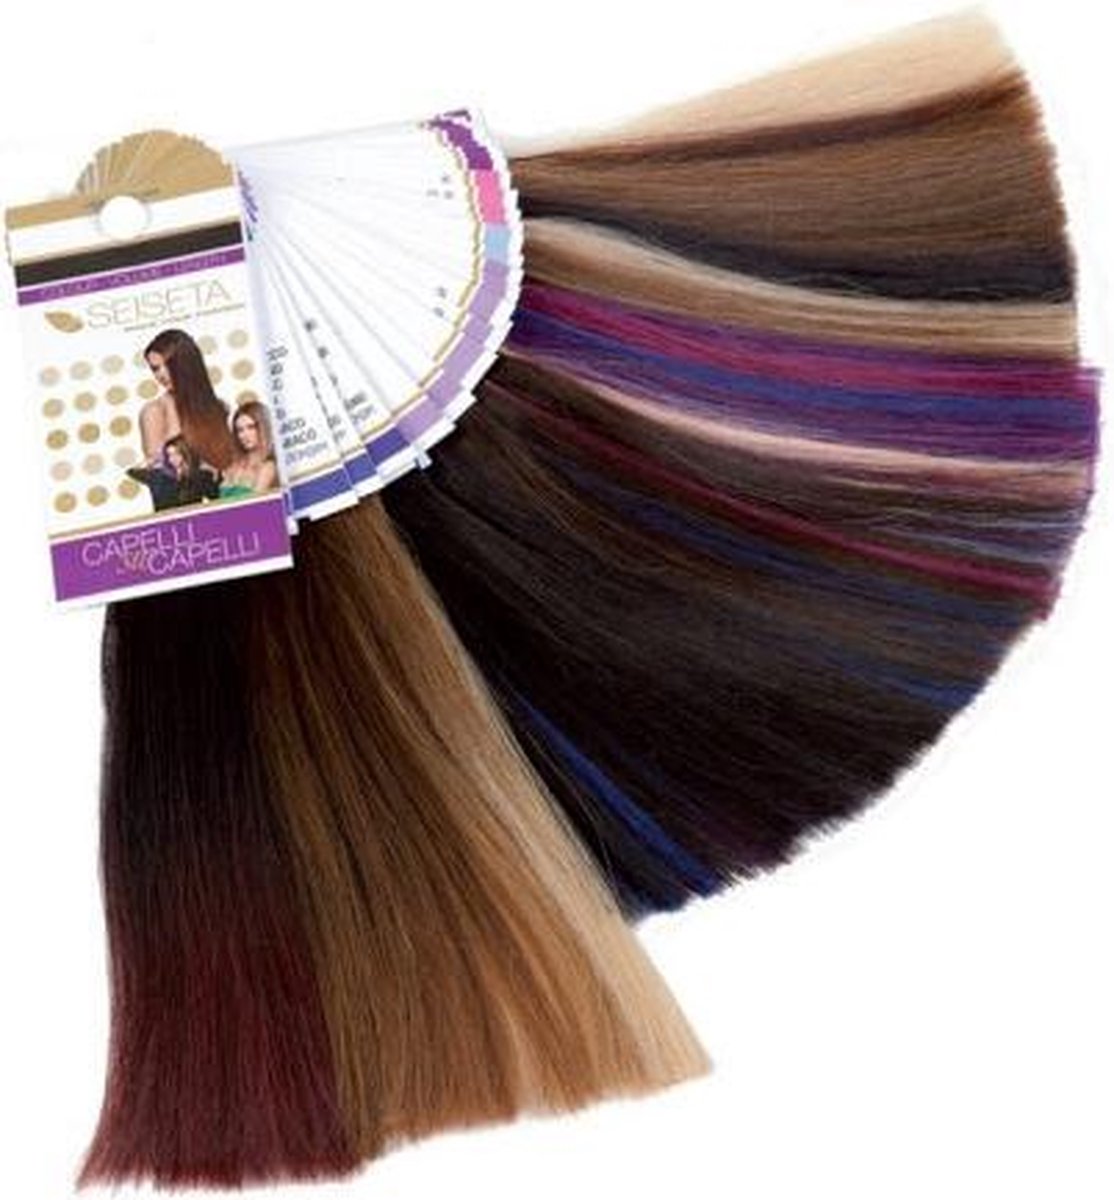 Seiseta hairextensions kleurenring